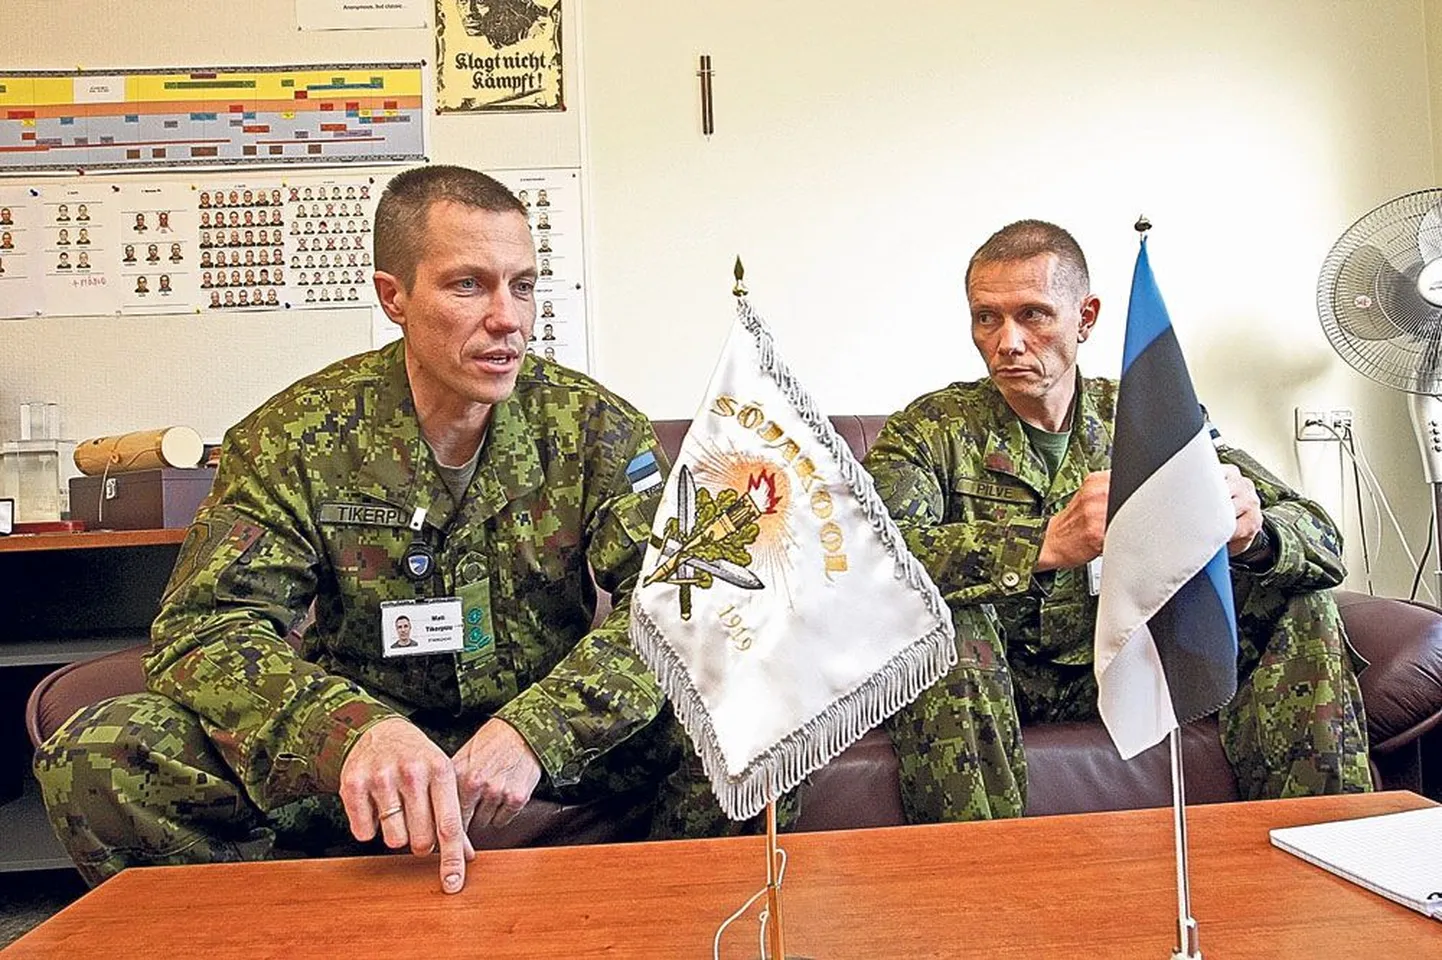 Kõrgema sõjakooli ülem kolonelleitnant Mati Tikerpuu (vasakul) ja sõjakooli veebel vanemveebel Helari Pilve räägivad kooli värskest rivilaulust.